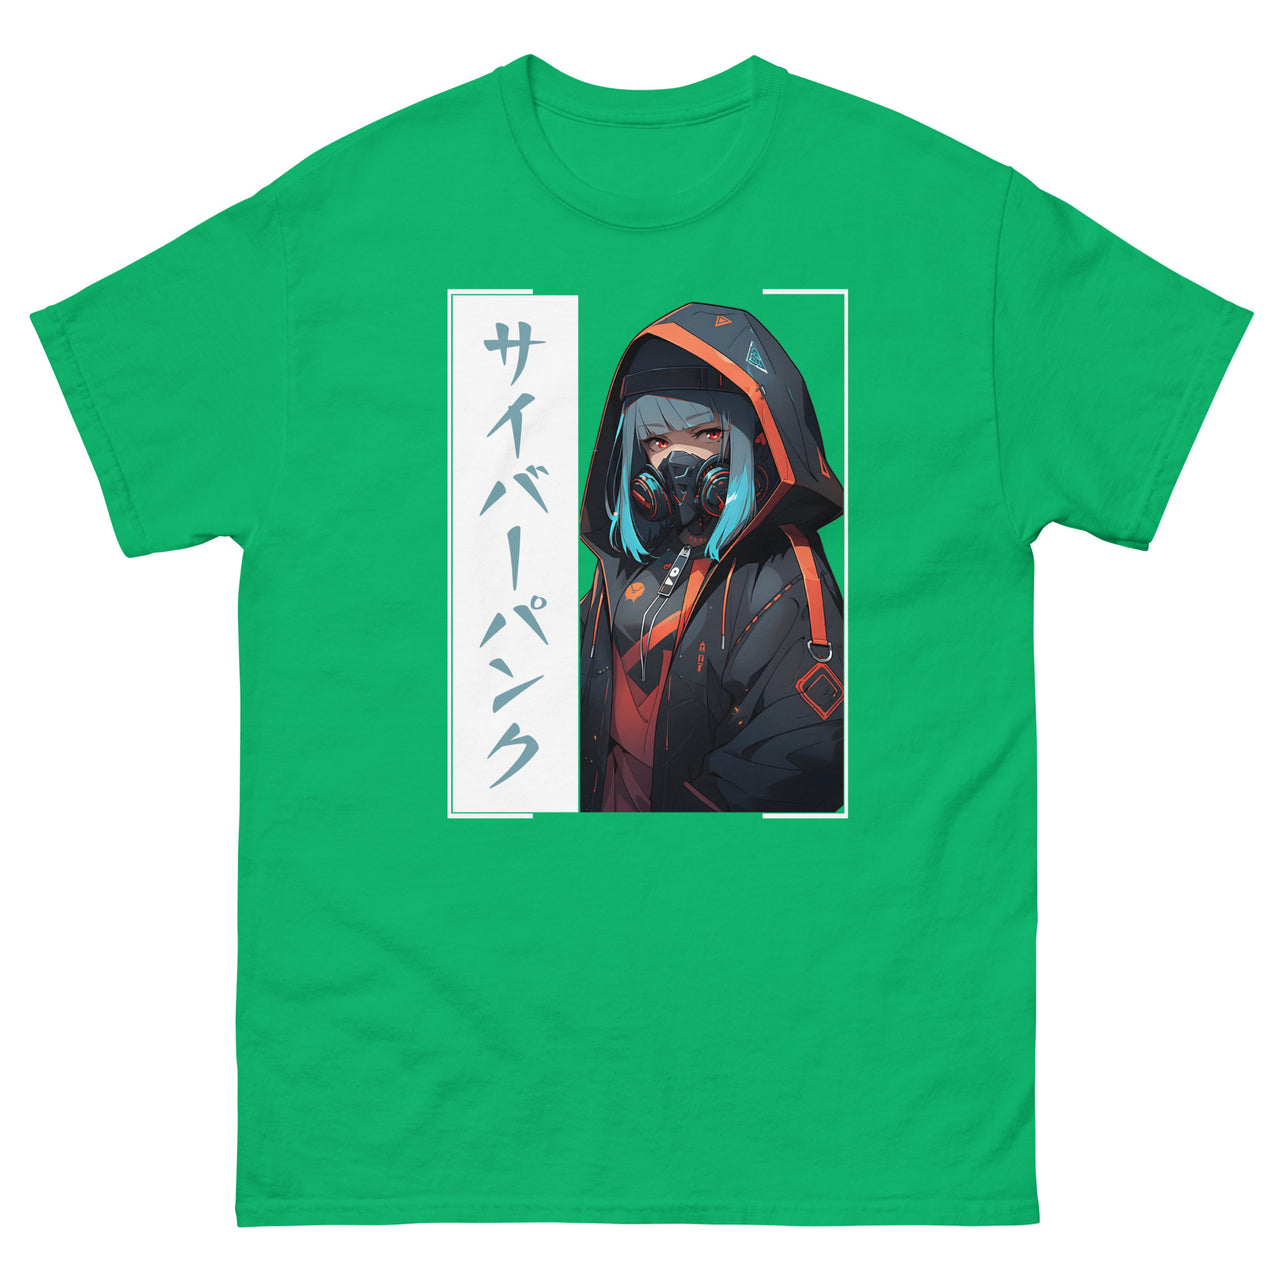 Anime Cyberpunk Japanese Japan Pop Art T-Shirt